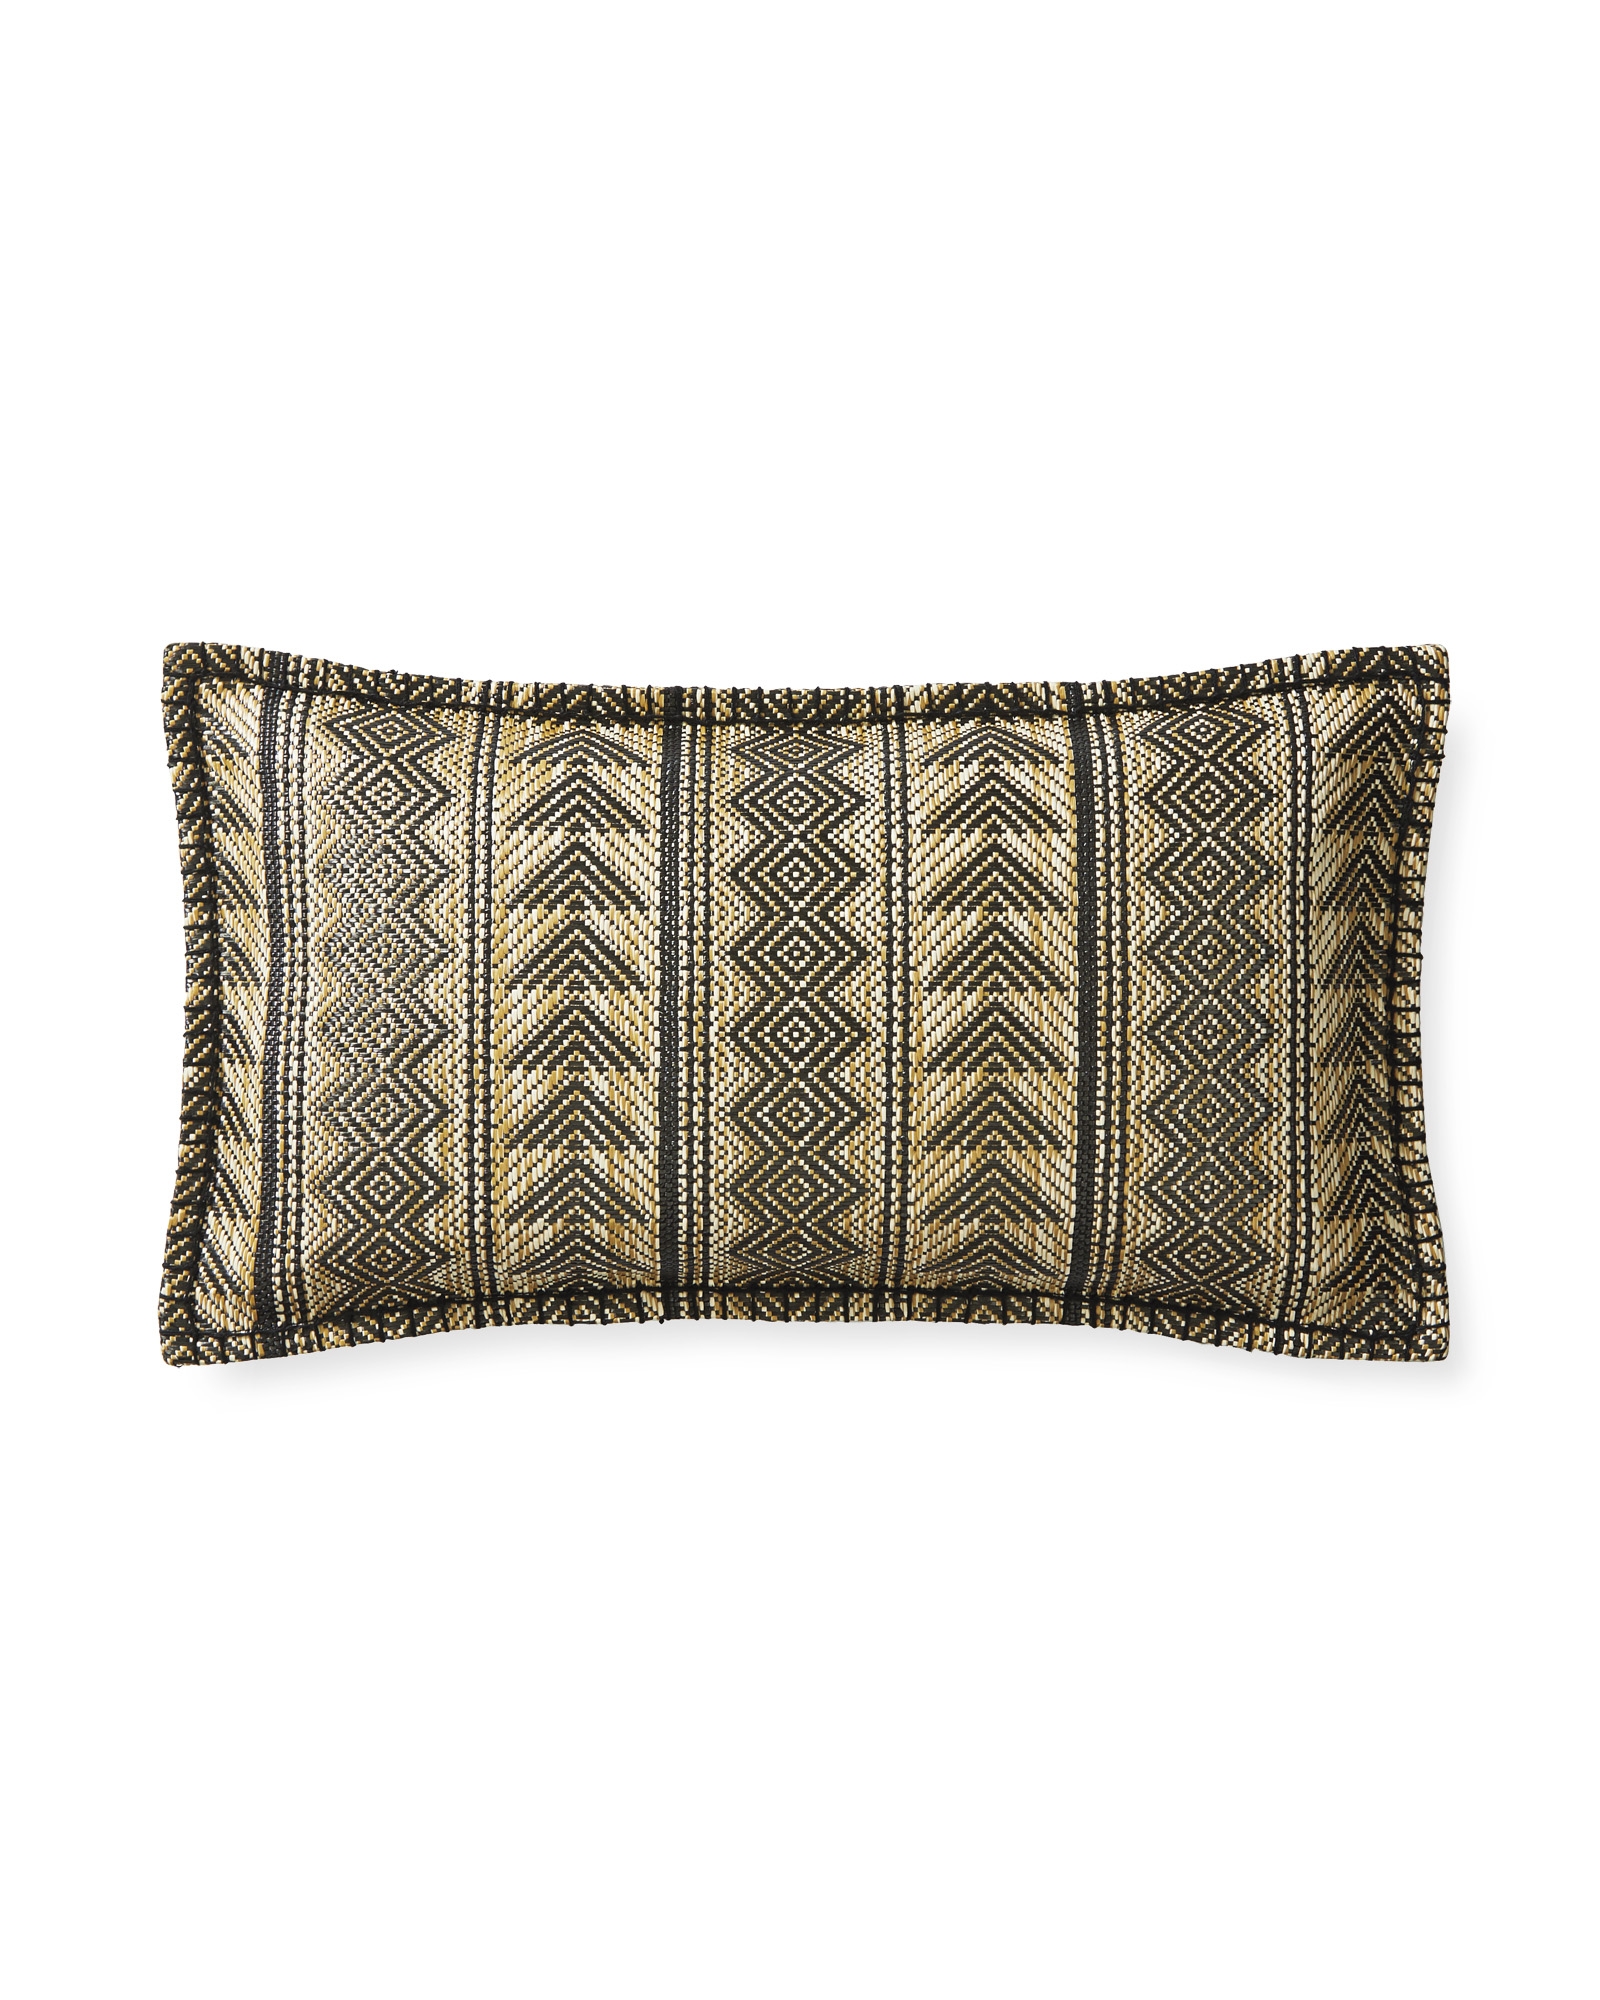 Acacia Outdoor Pillow Cover - Image 0